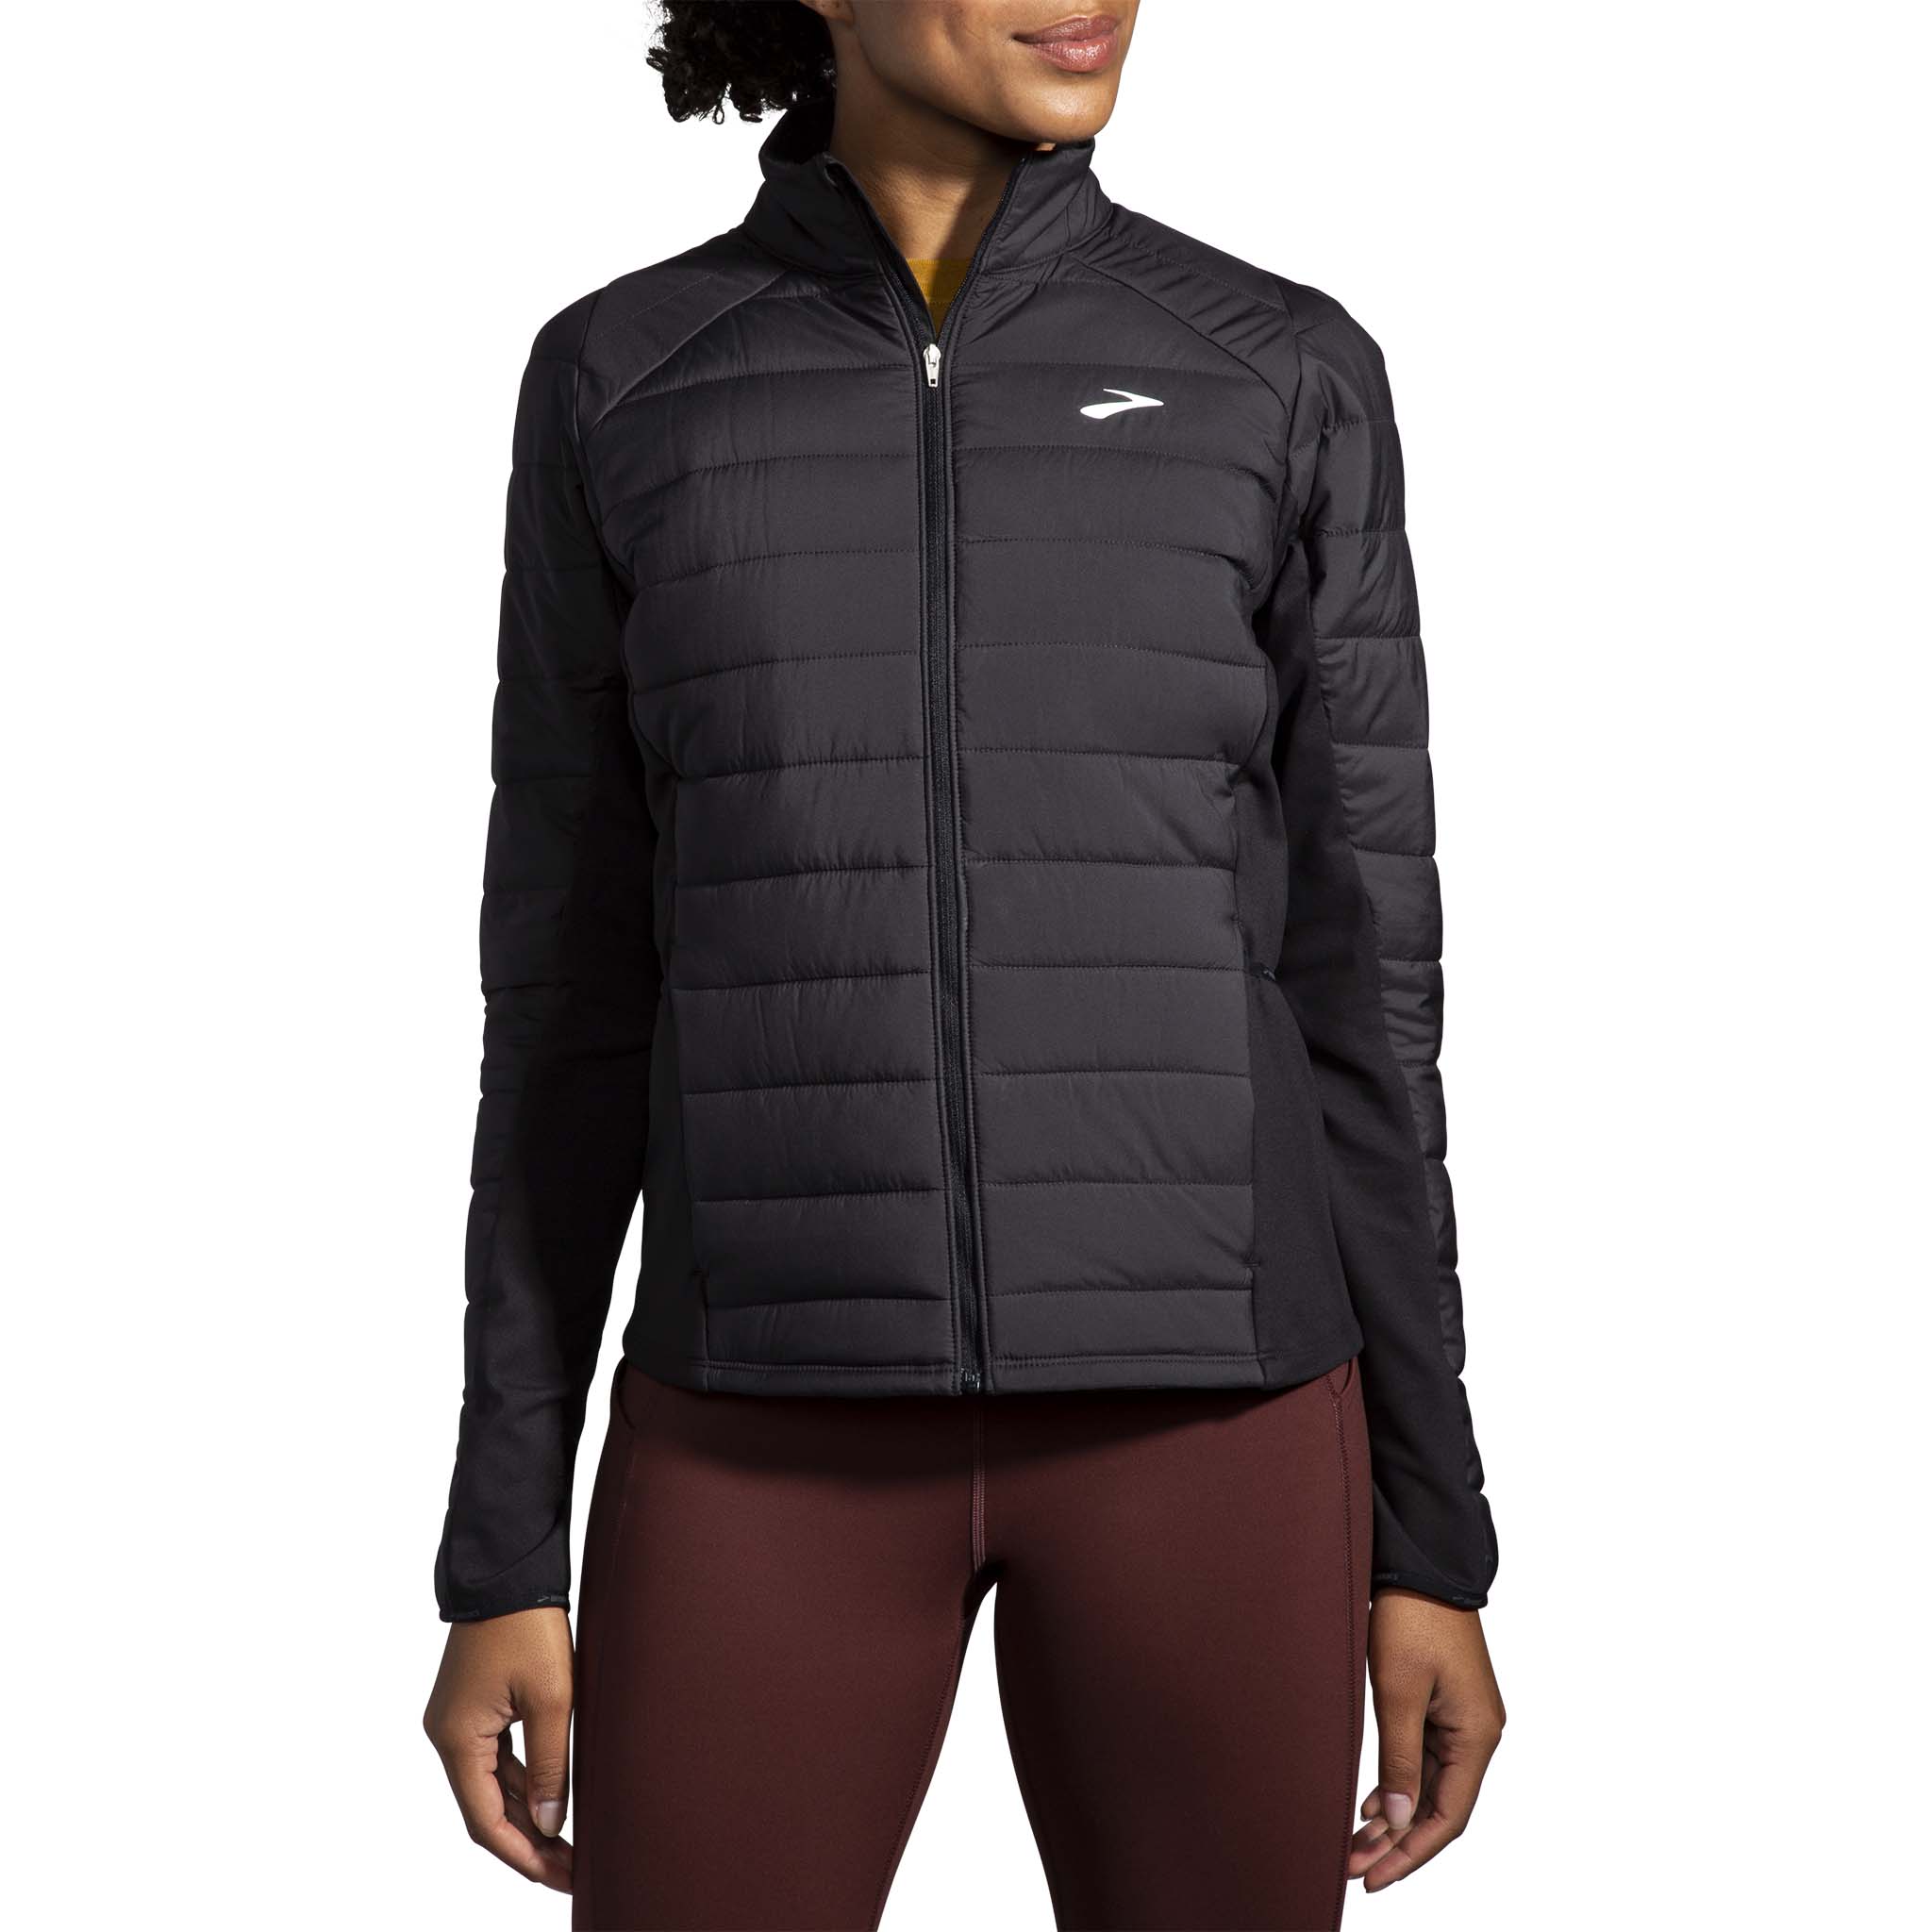 Brooks Shield Hybrid Jacket 2.0 running jacket for women – Soccer Sport  Fitness